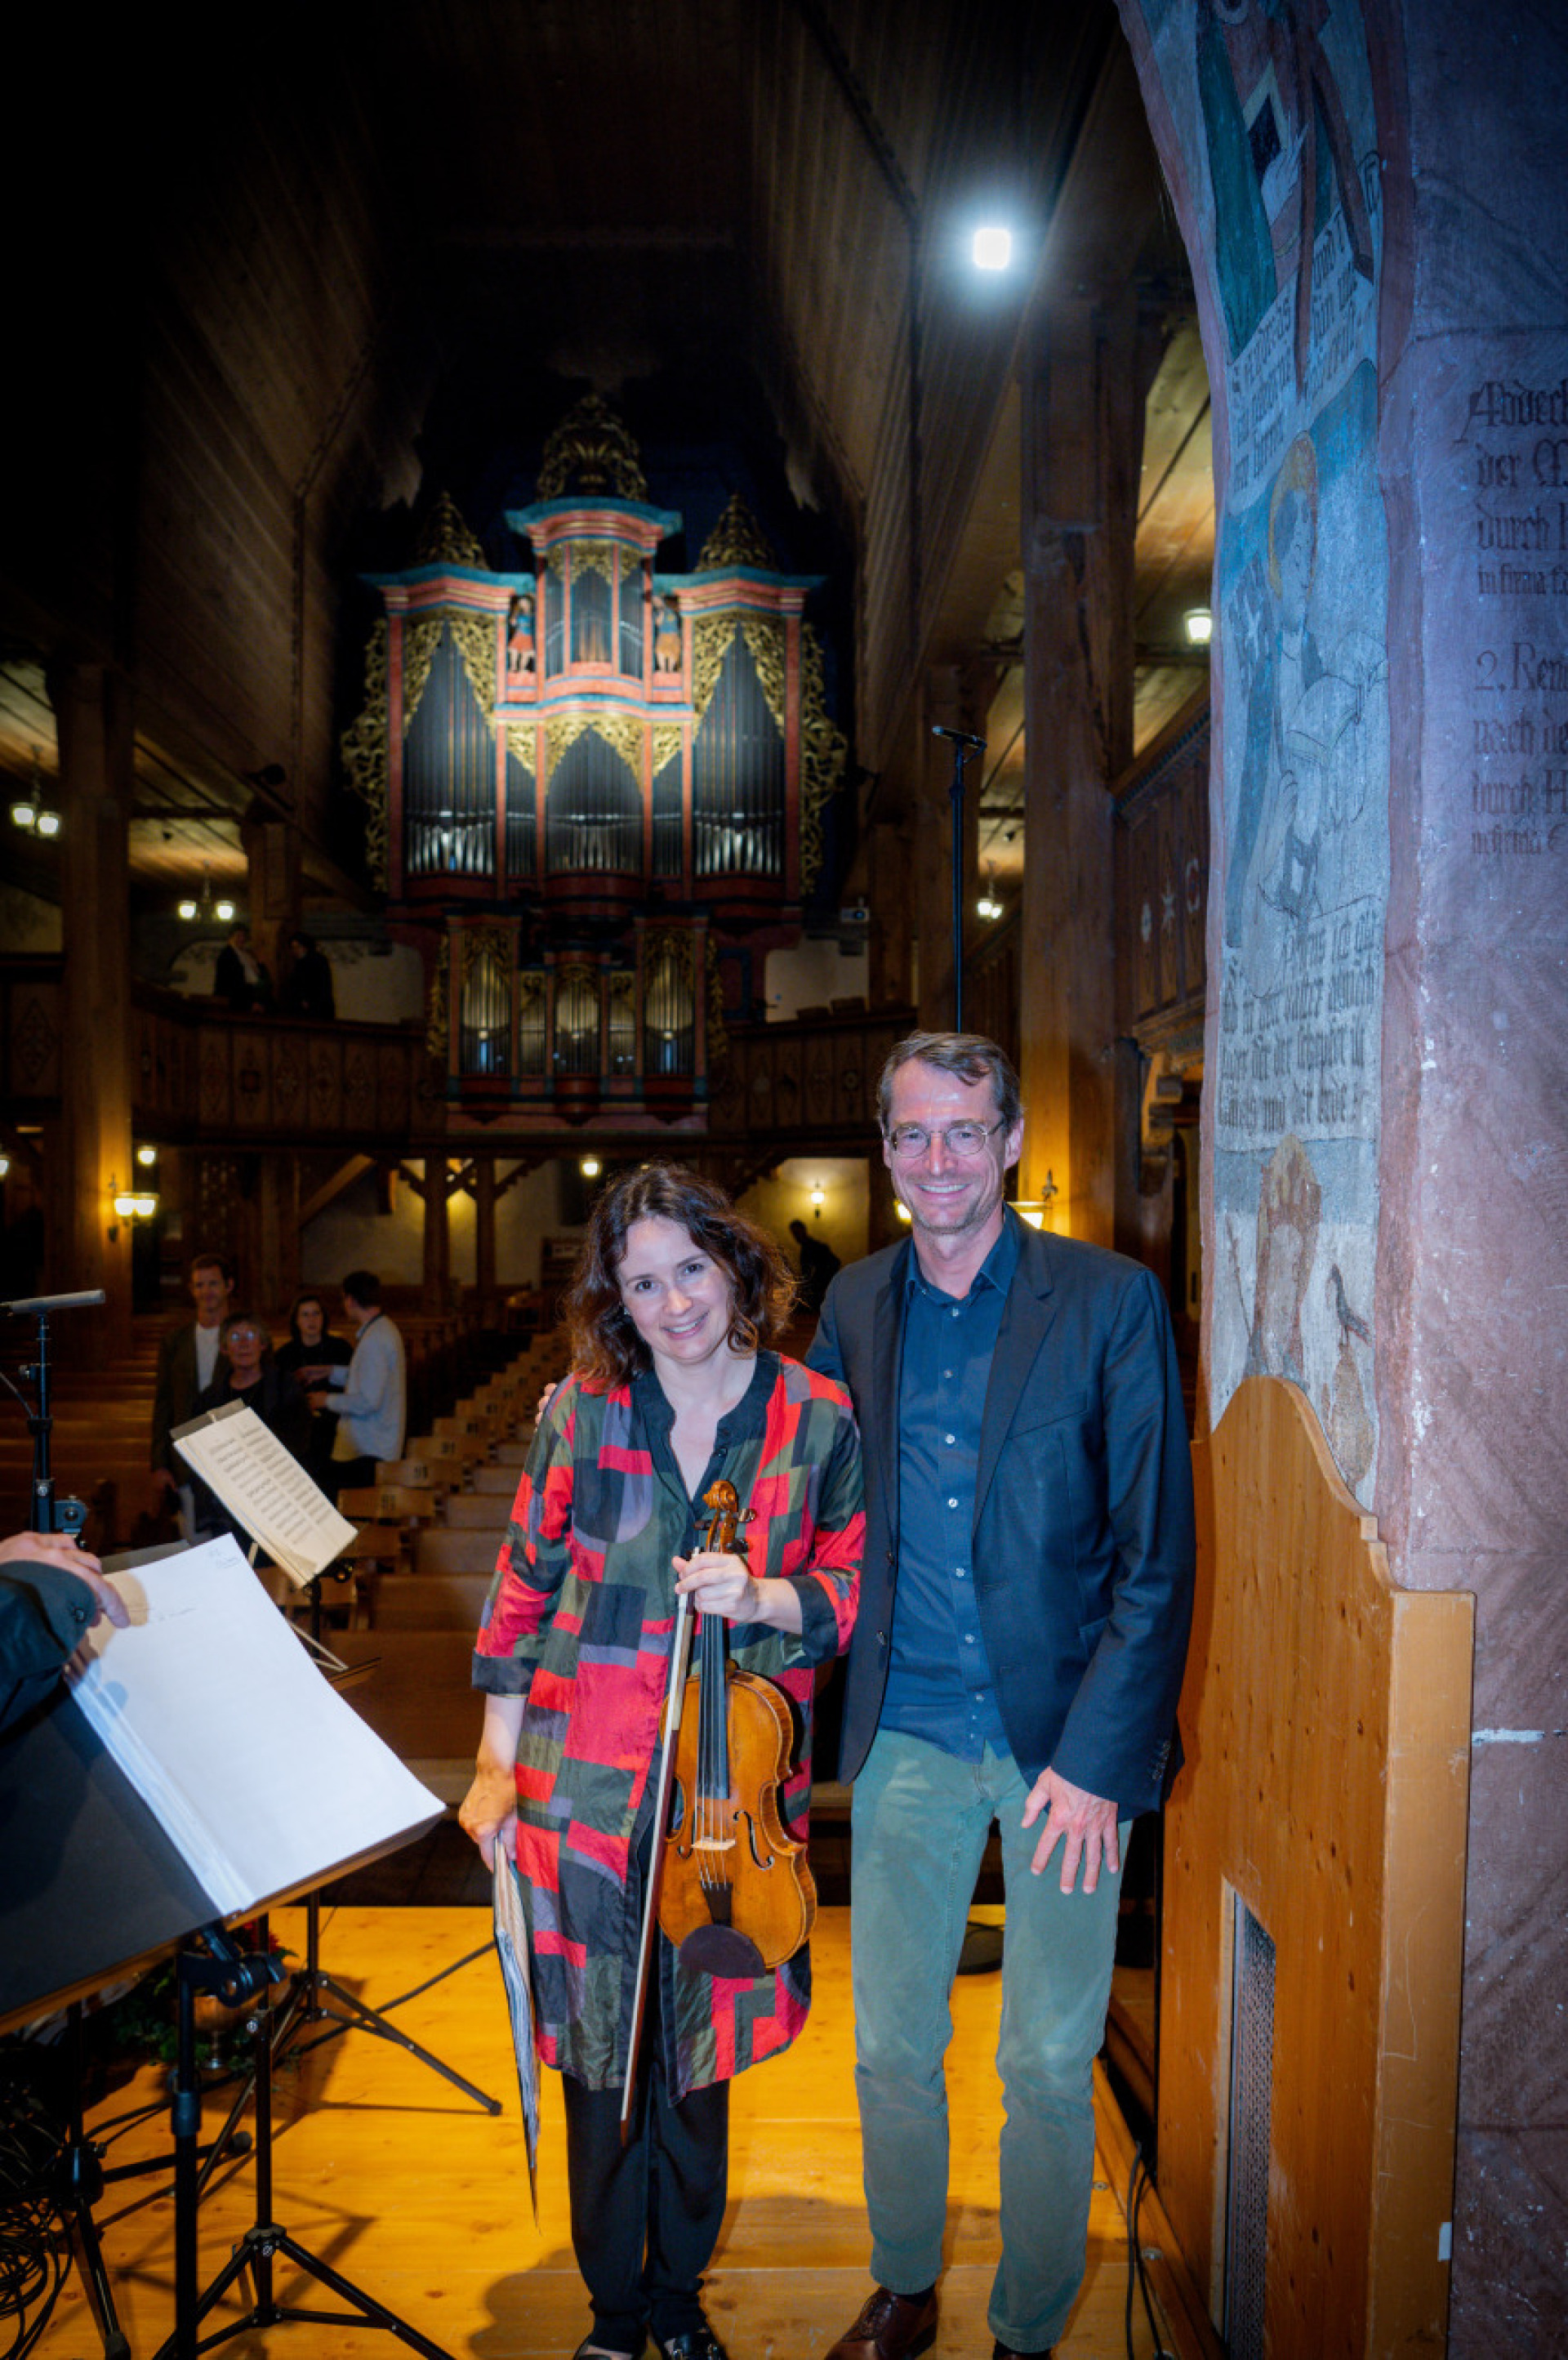 Christoph Müller und Patricia Kopatchinskaja nach dem Konzert am 26. August in der Kirche Saanen. (FOTOS: RAPHAEL FAUX/GSTAADPHOTOGRAPHY.COM)